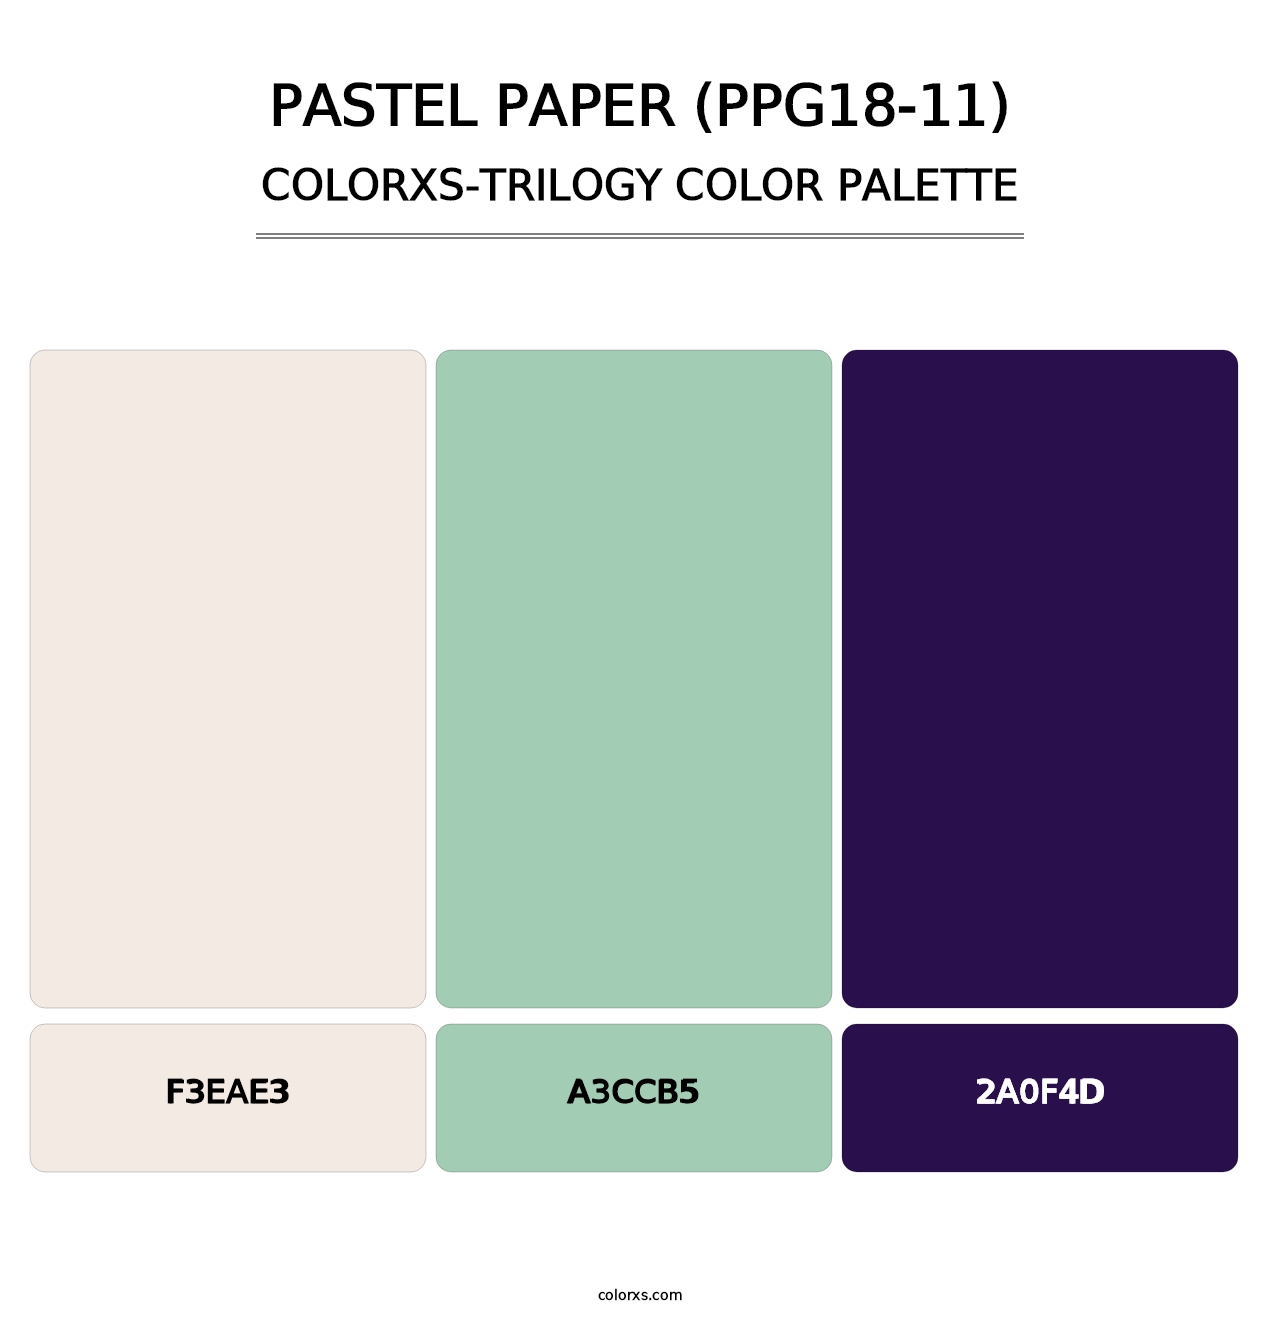 Pastel Paper (PPG18-11) - Colorxs Trilogy Palette